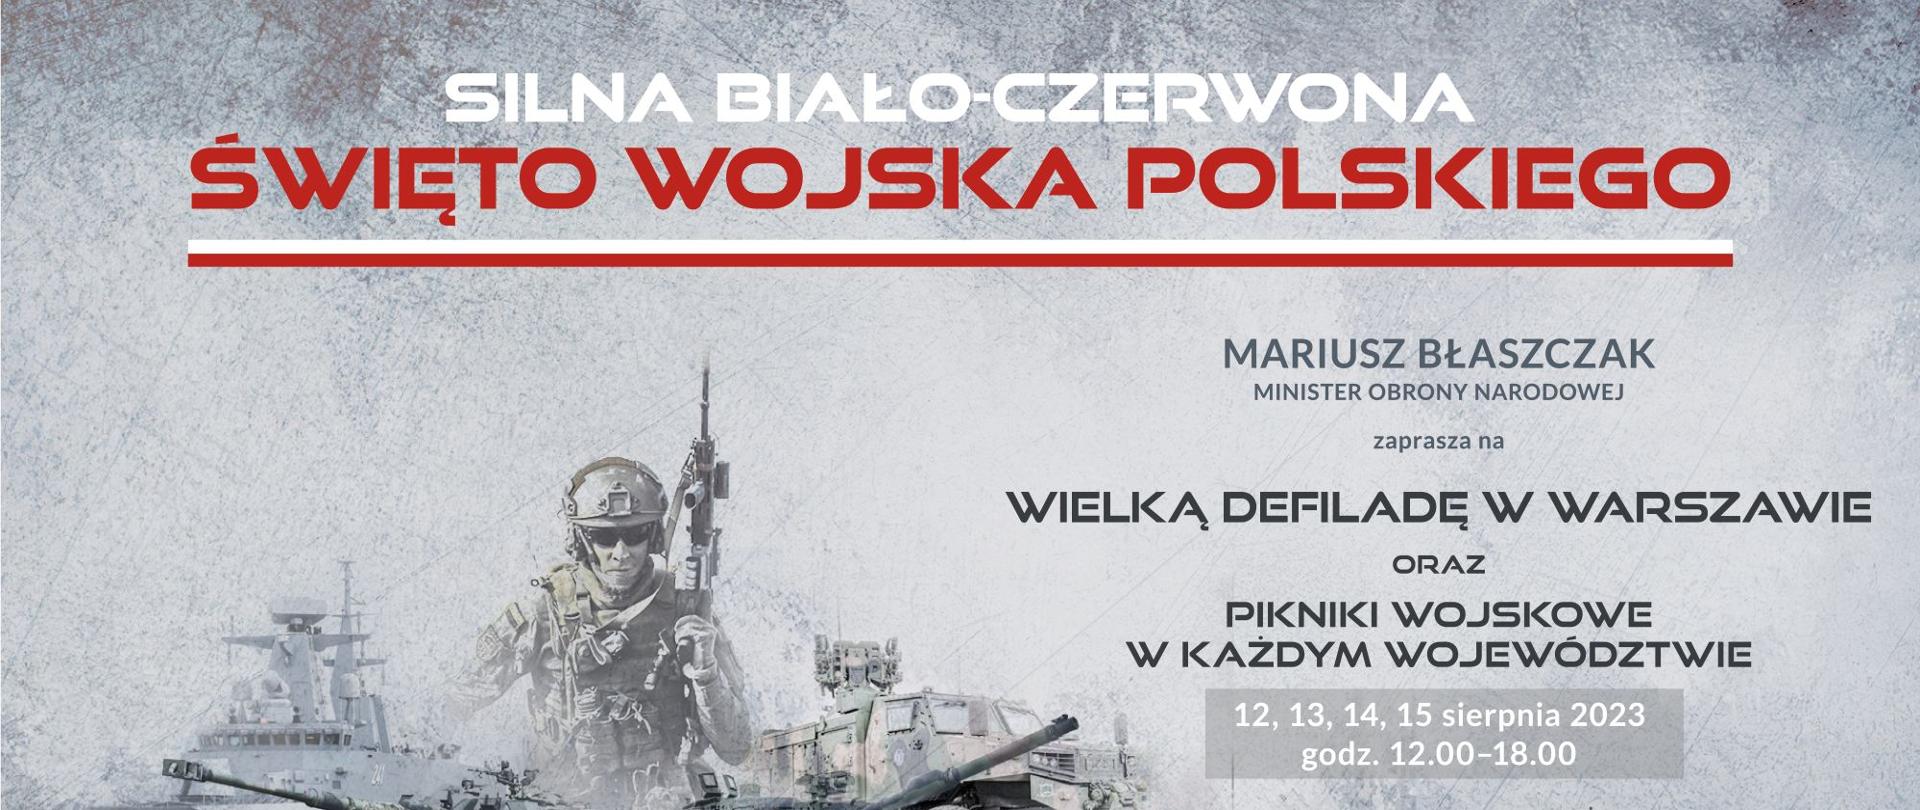 Banner promujący święto Wojska Polskiego 